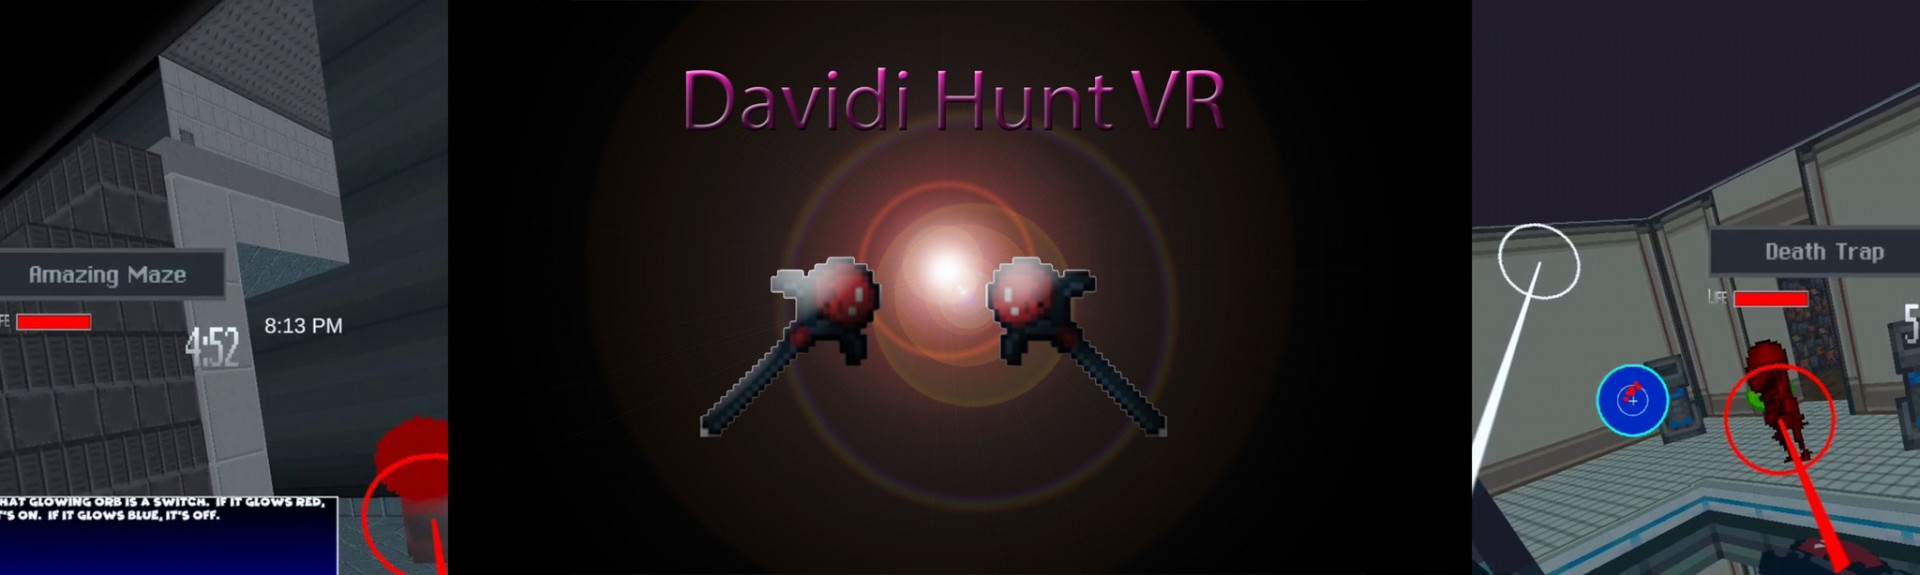 Davidi Hunt VR